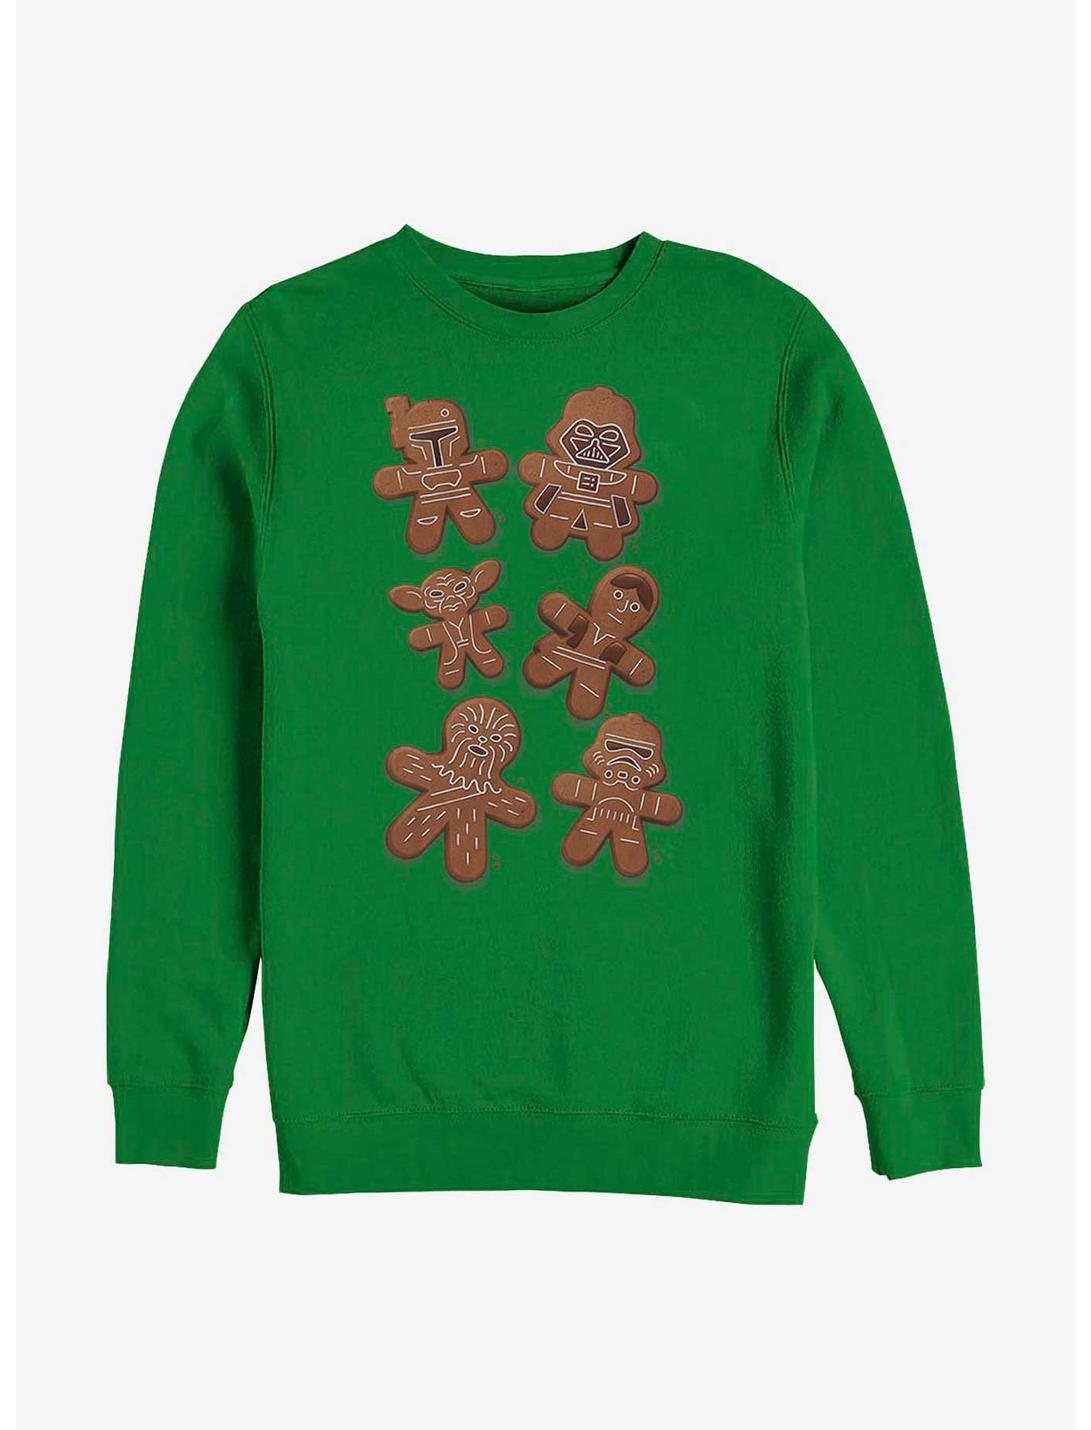 Star Wars Gingerbread Wars Sweatshirt, KELLY, hi-res